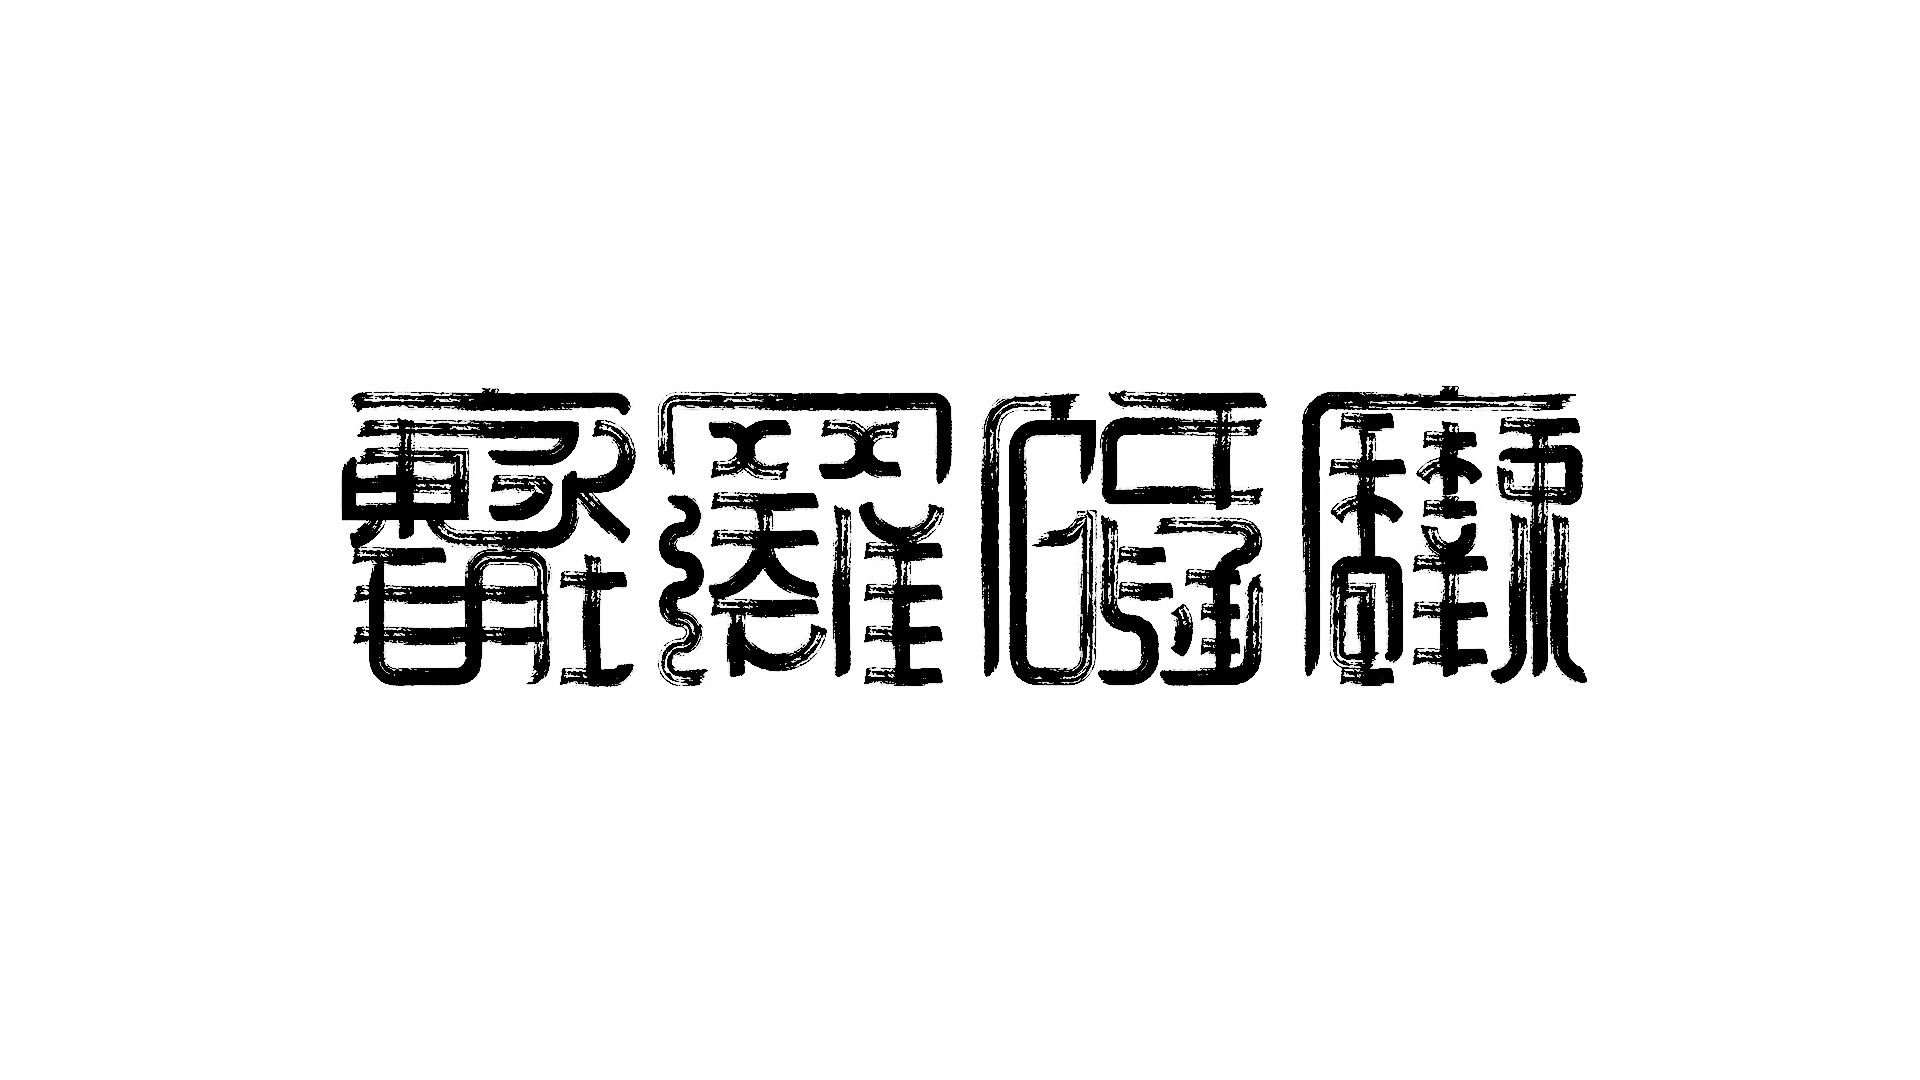 香格里拉标志logo图片-诗宸标志设计